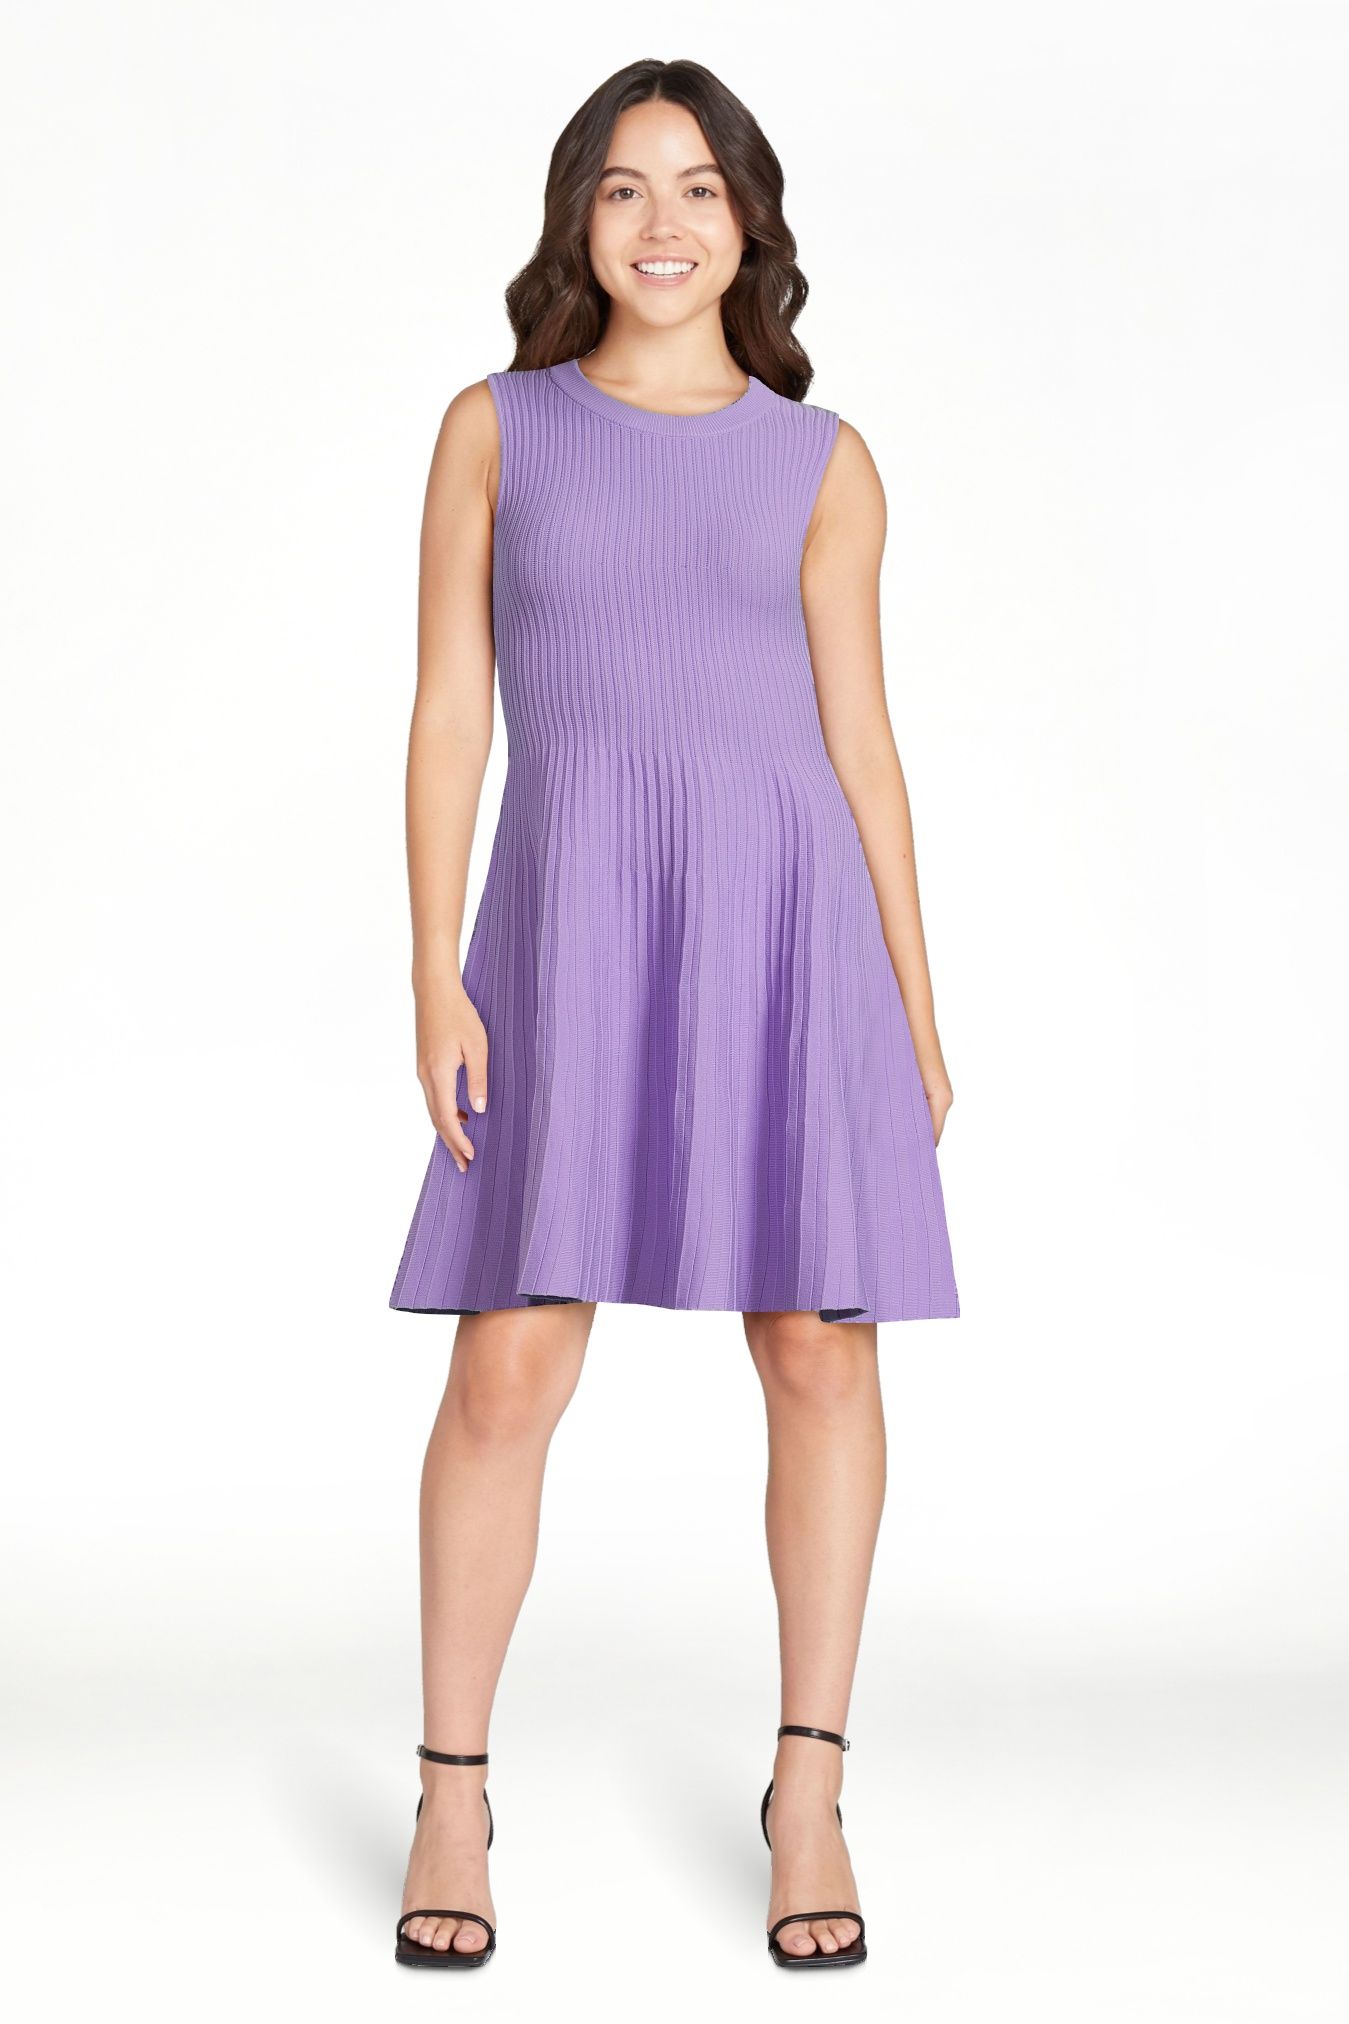 Scoop Women's Striped Mini Sweater Dress, Sizes XS-XXL | Walmart (US)